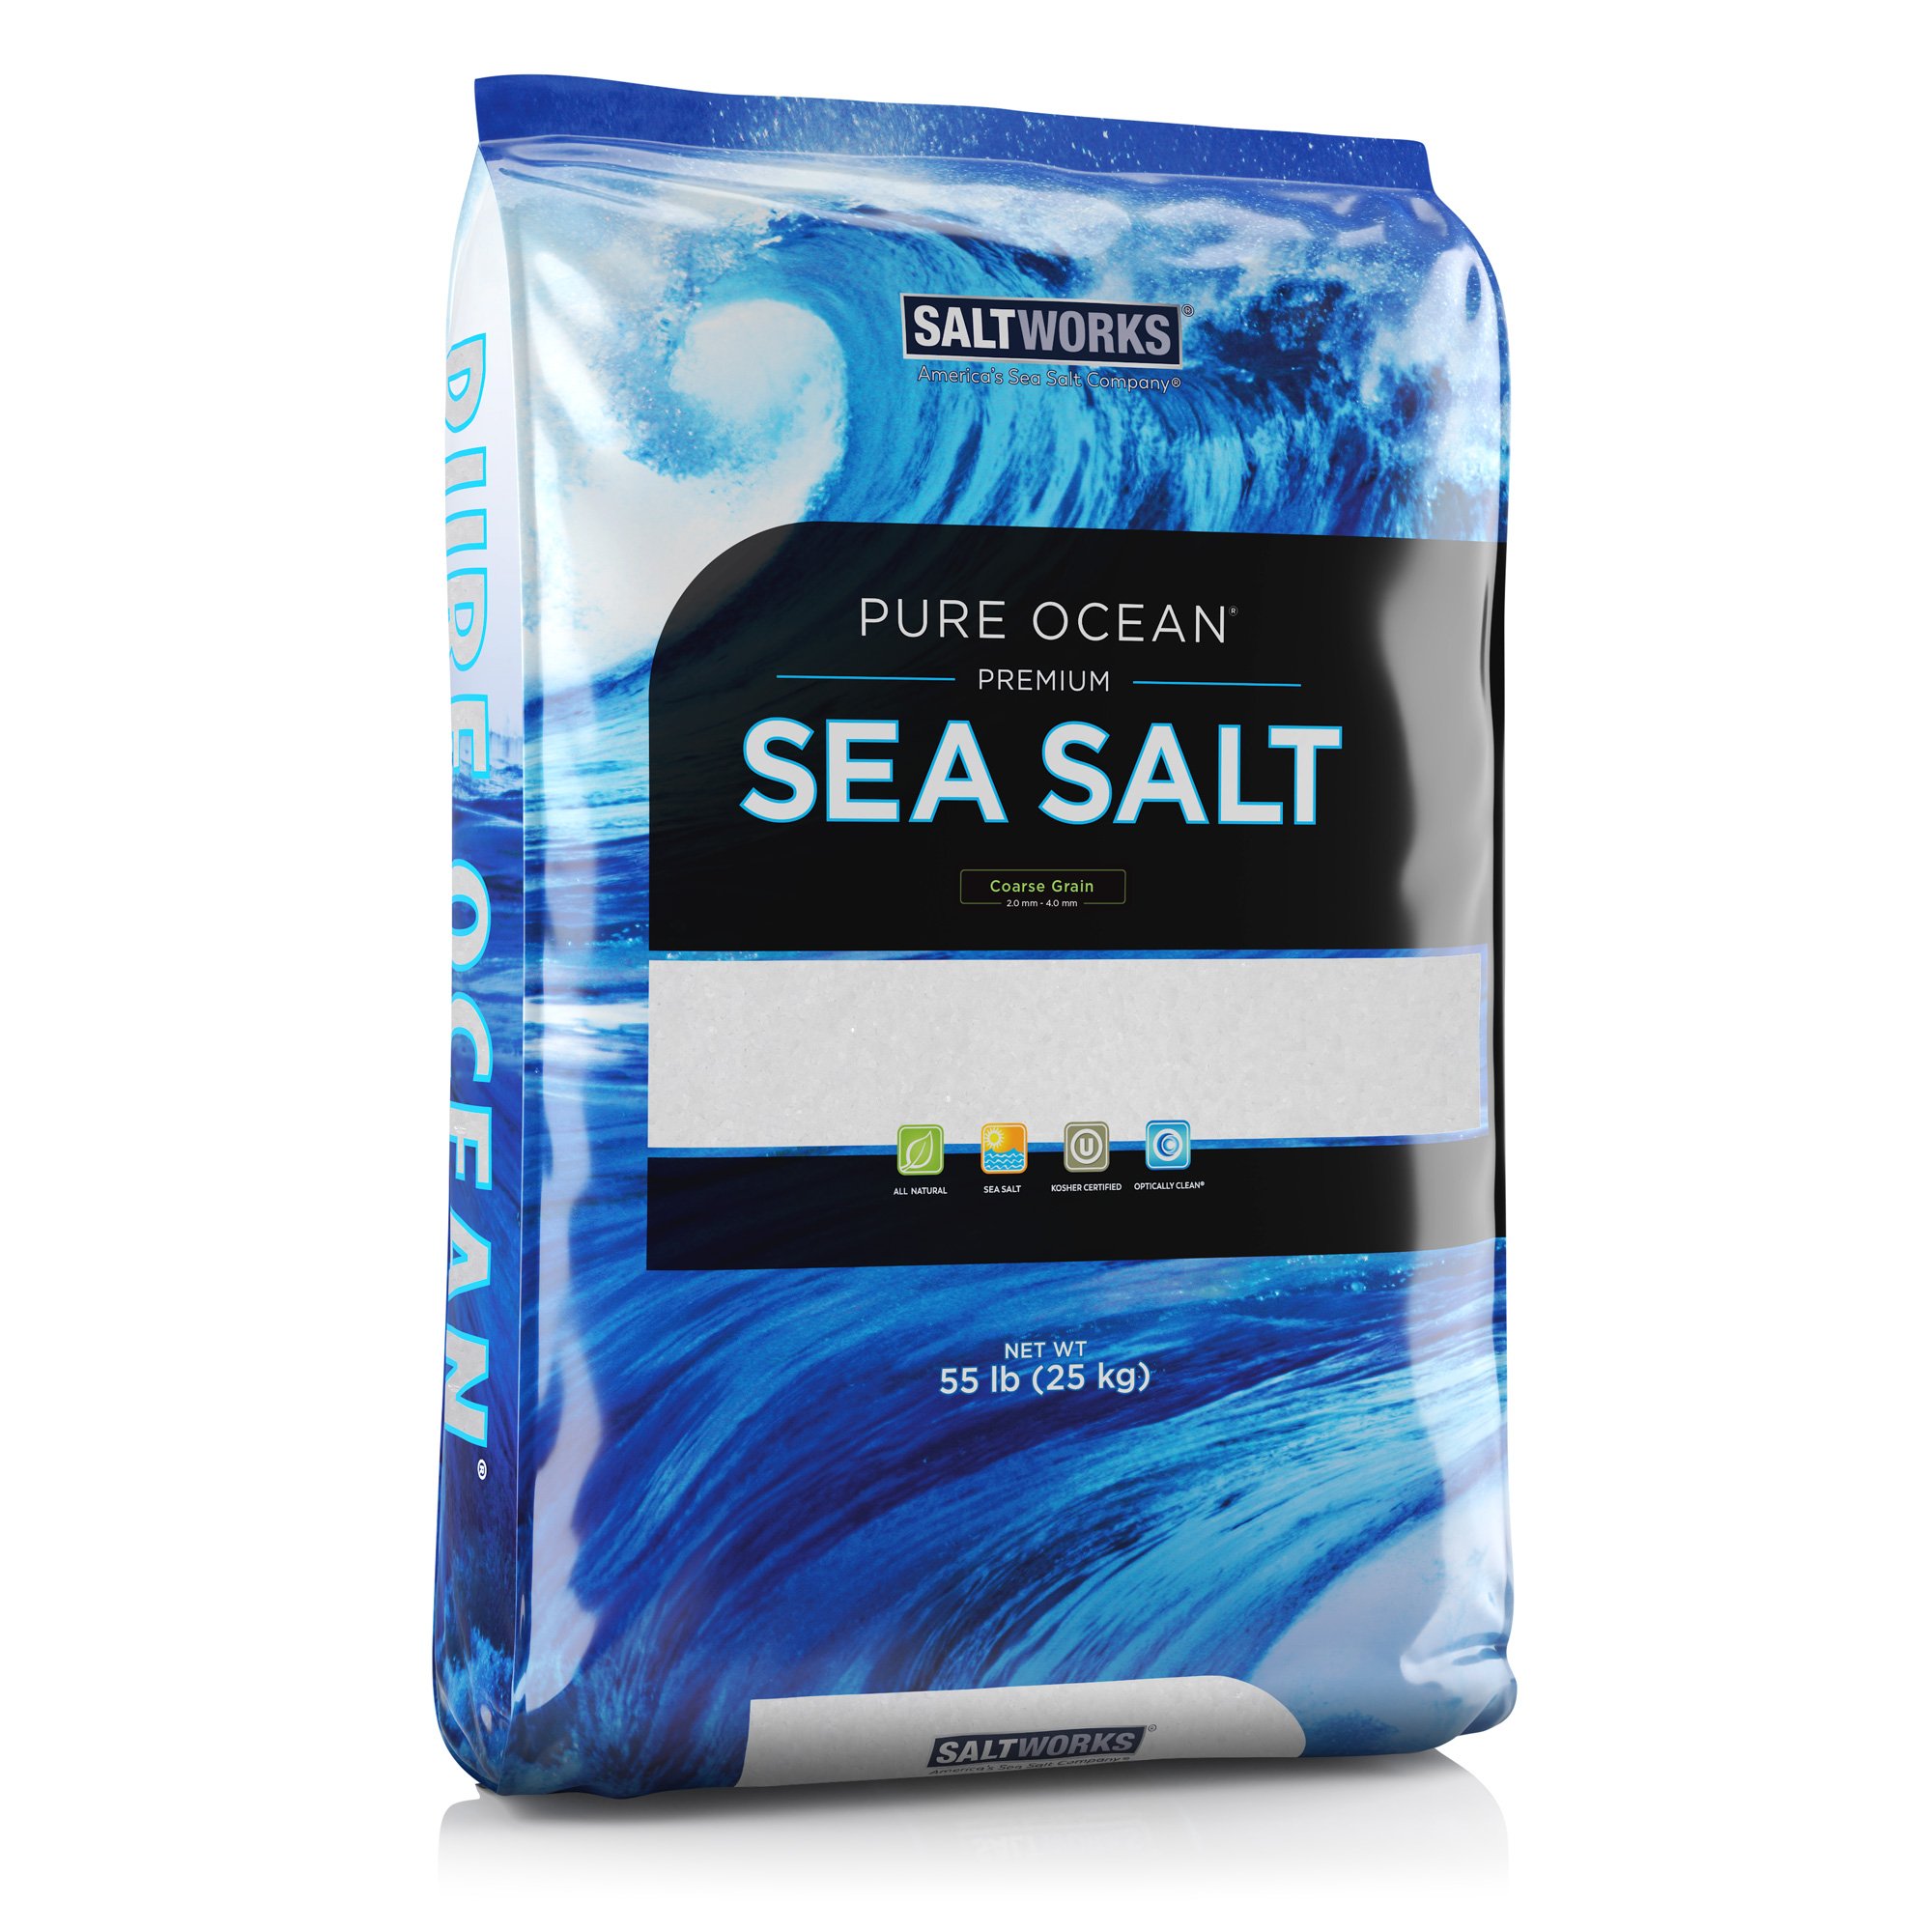 8 ounce bag Salt Water Taffy